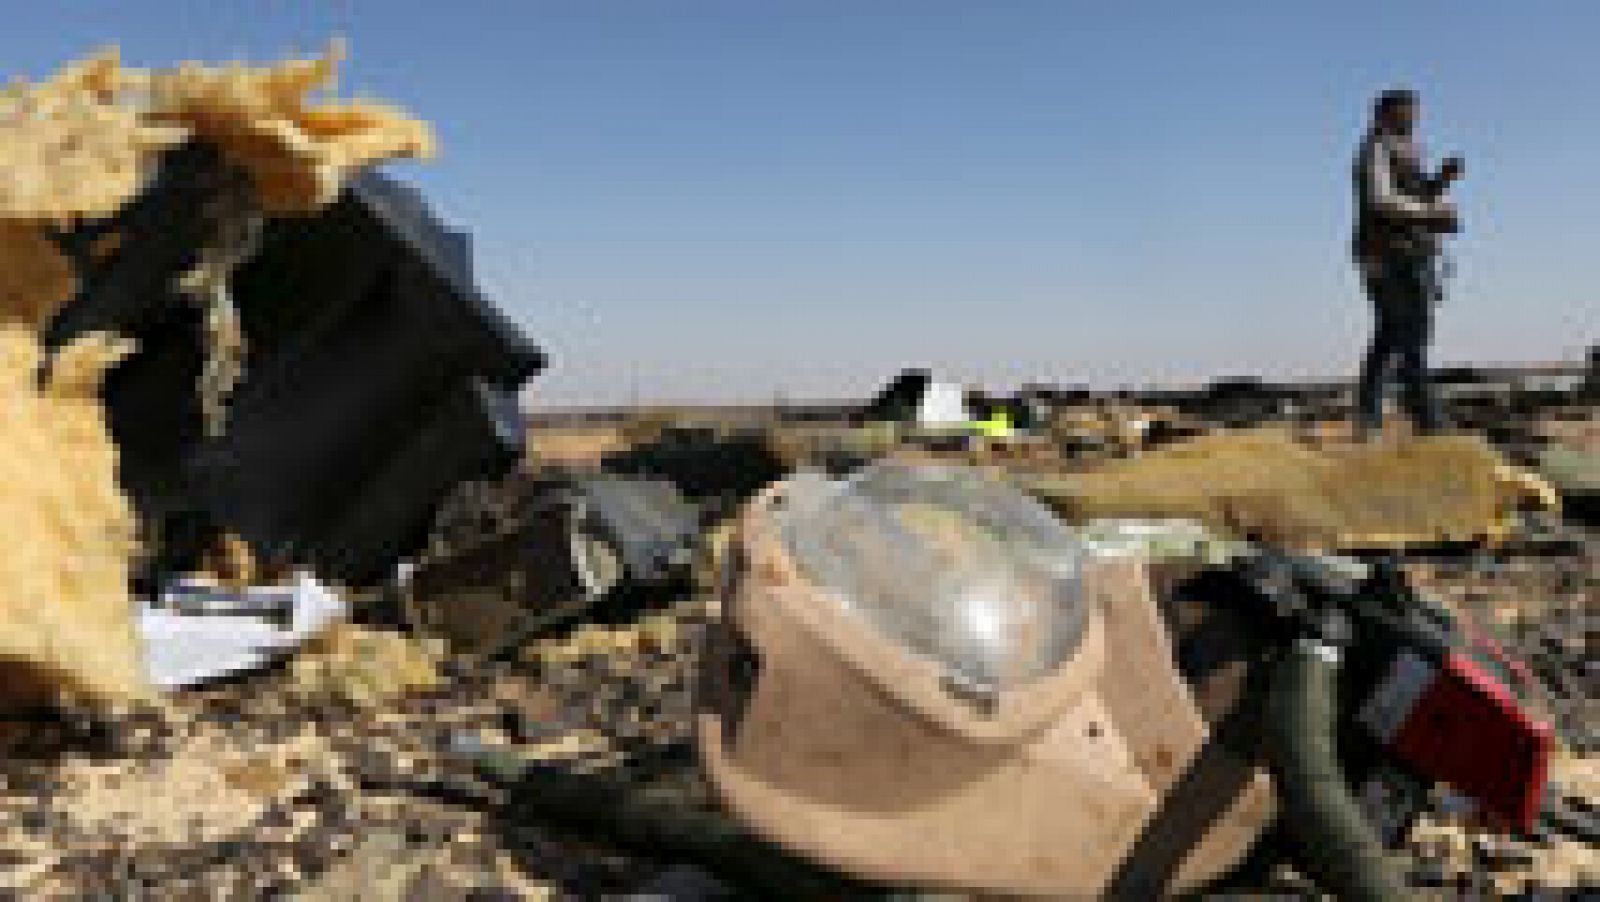 Tragedia aérea en Egipto: investigadores rusos y egipcios examinarán las cajas negras